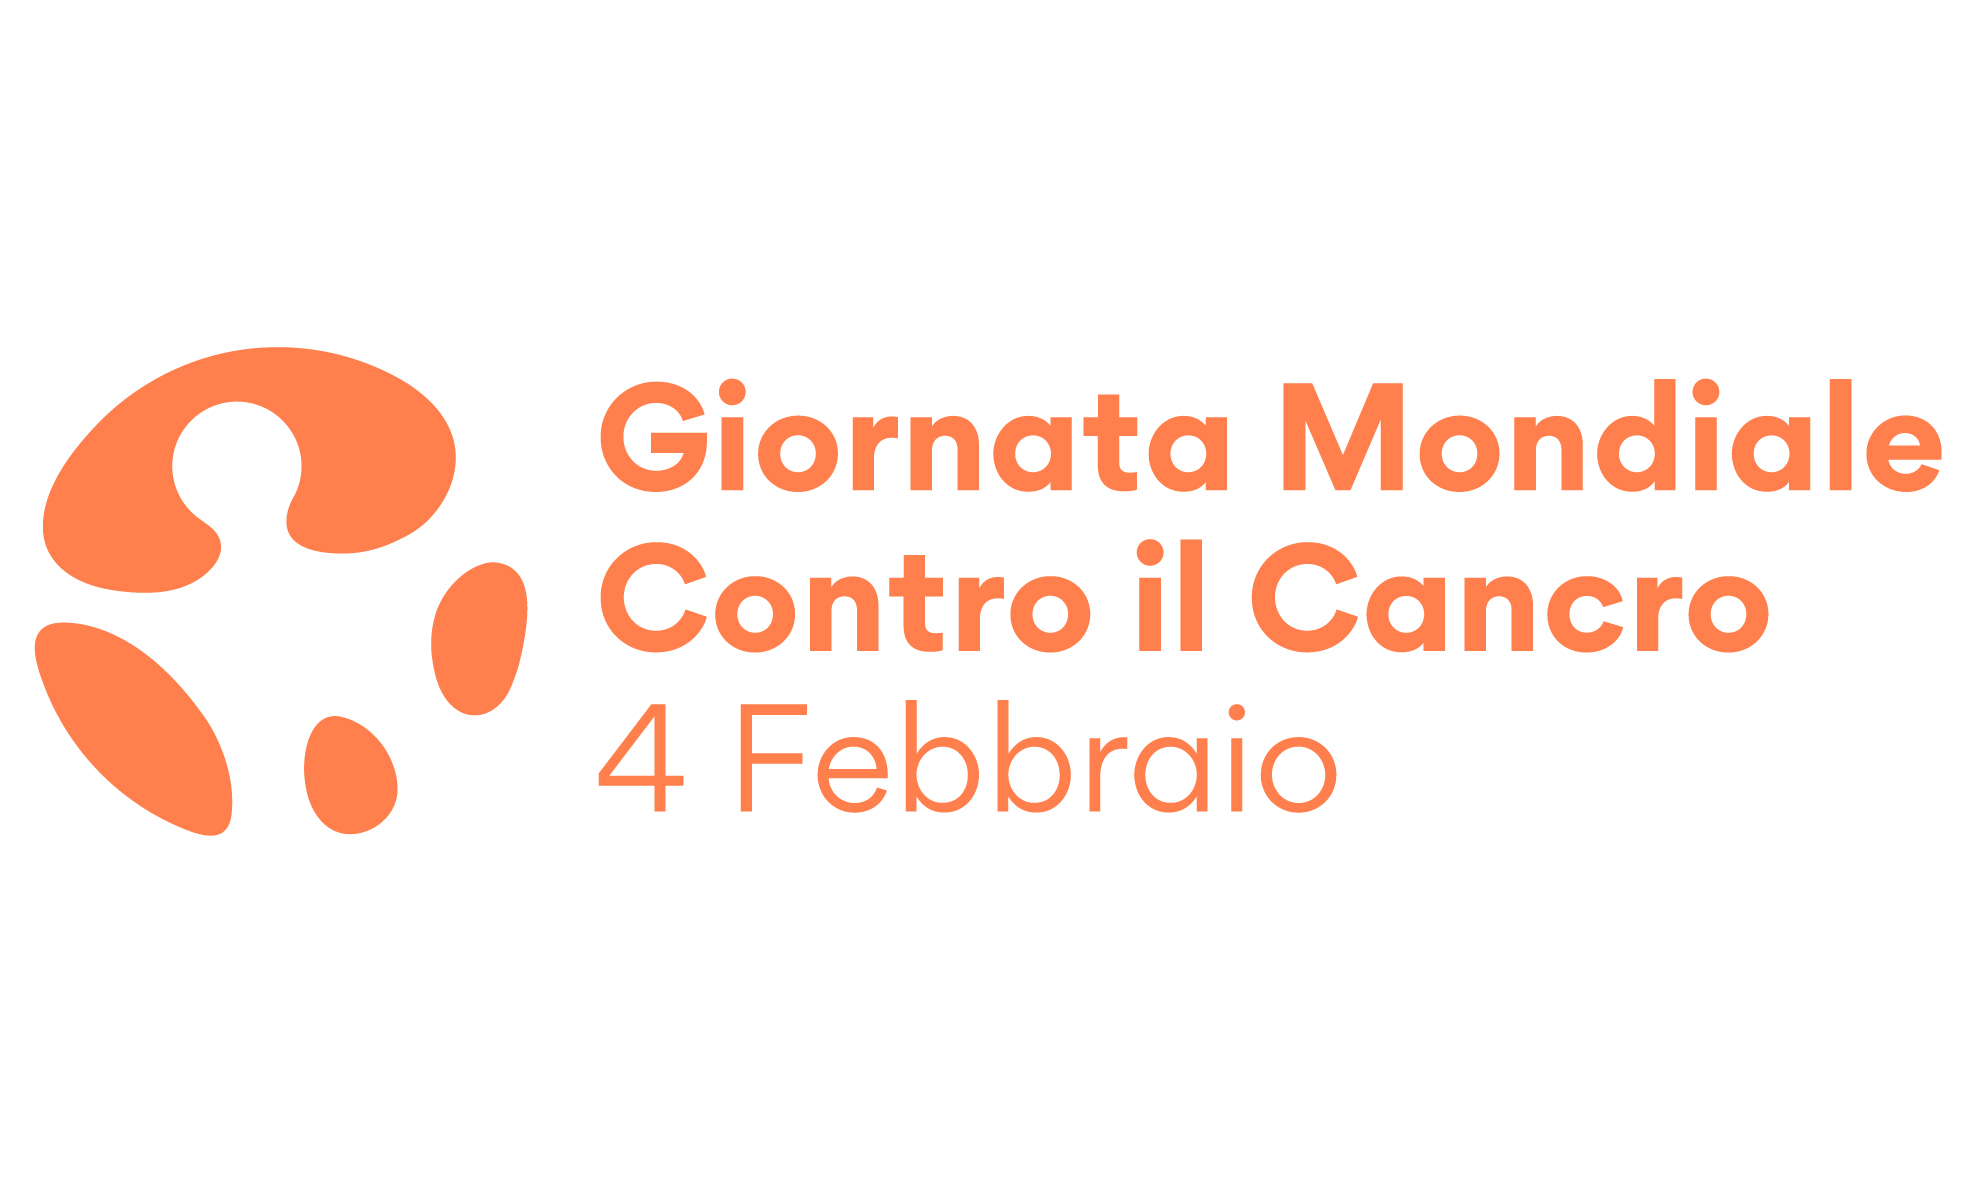 4 febbraio, Giornata Mondiale contro il Cancro. Anche PROMETEO ODV si unisce all’appello in favore della prevenzione